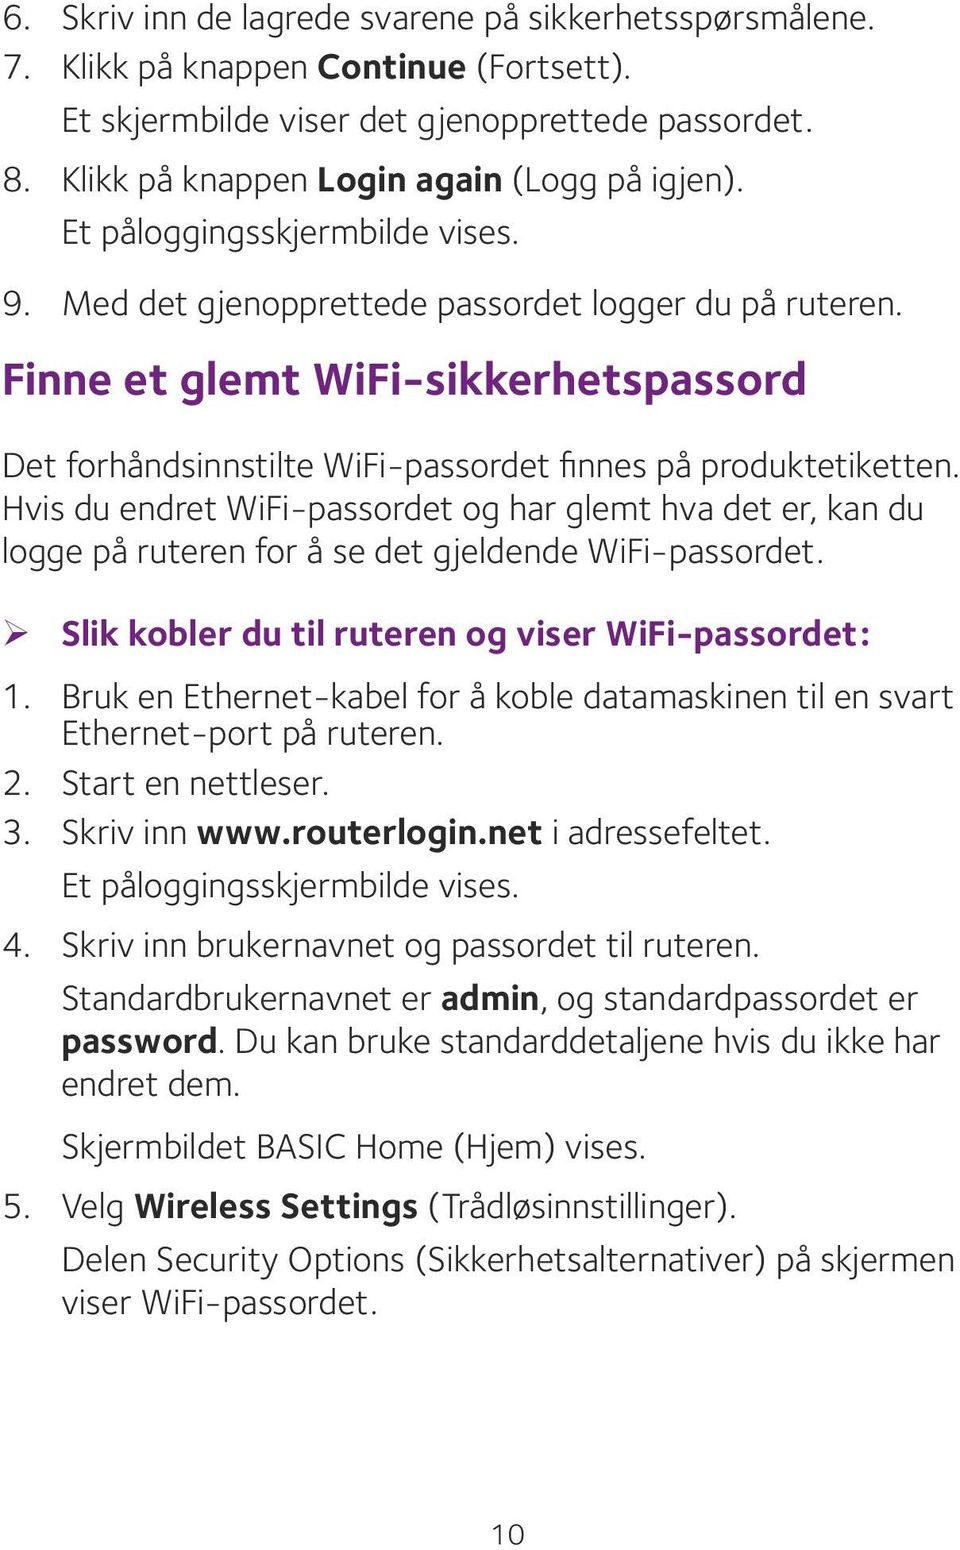 Hvis du endret WiFi-passordet og har glemt hva det er, kan du logge på ruteren for å se det gjeldende WiFi-passordet. ¾ Slik kobler du til ruteren og viser WiFi-passordet: 1.